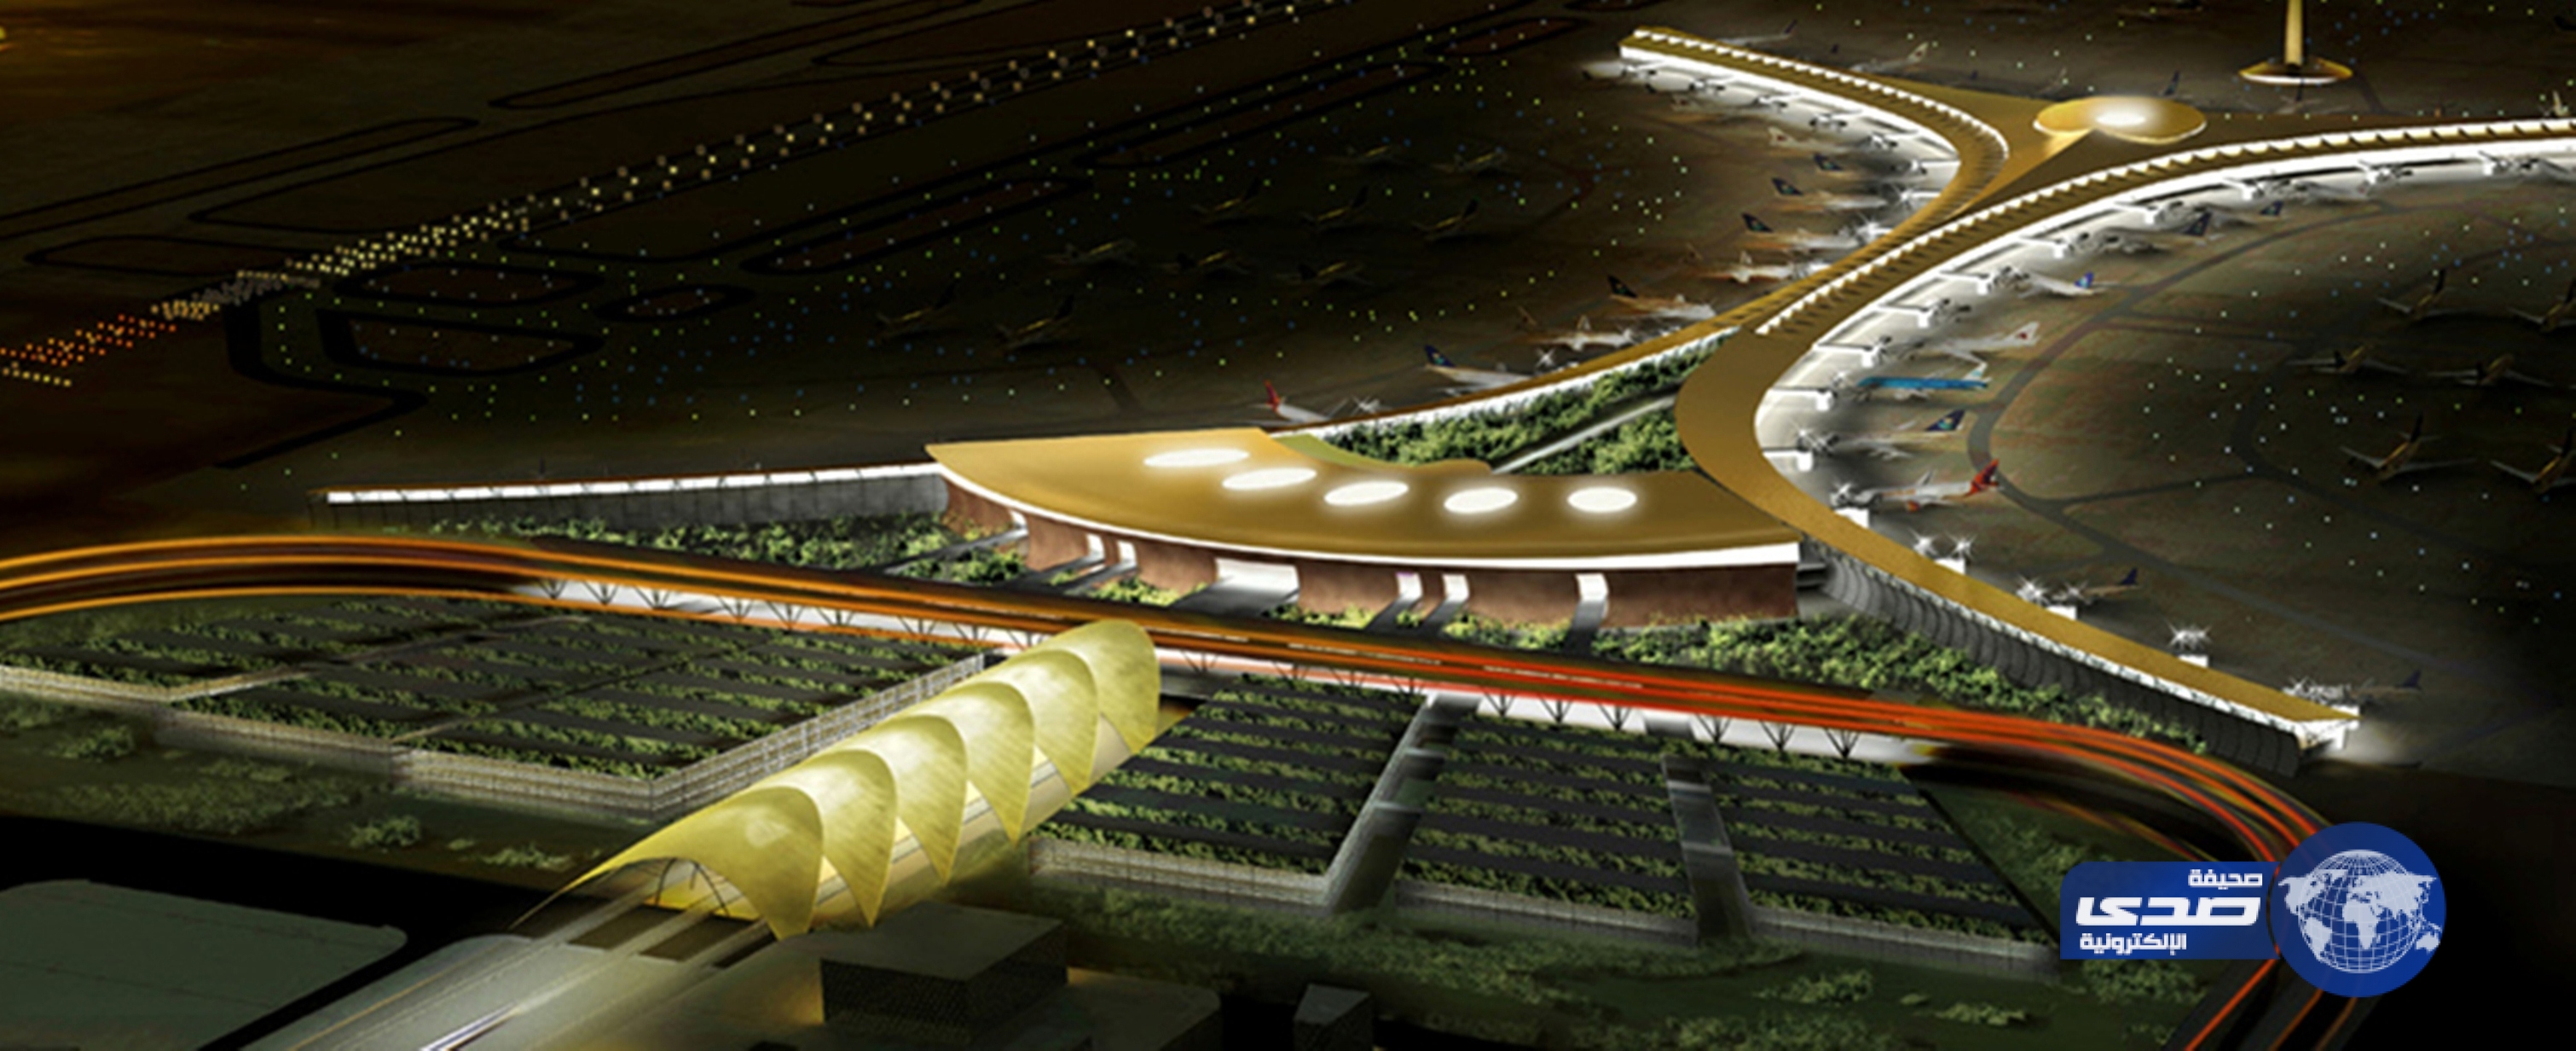 الطيران المدني : من المتوقع تشغيل مطار الملك عبدالعزيز الدولي بحلول 2017